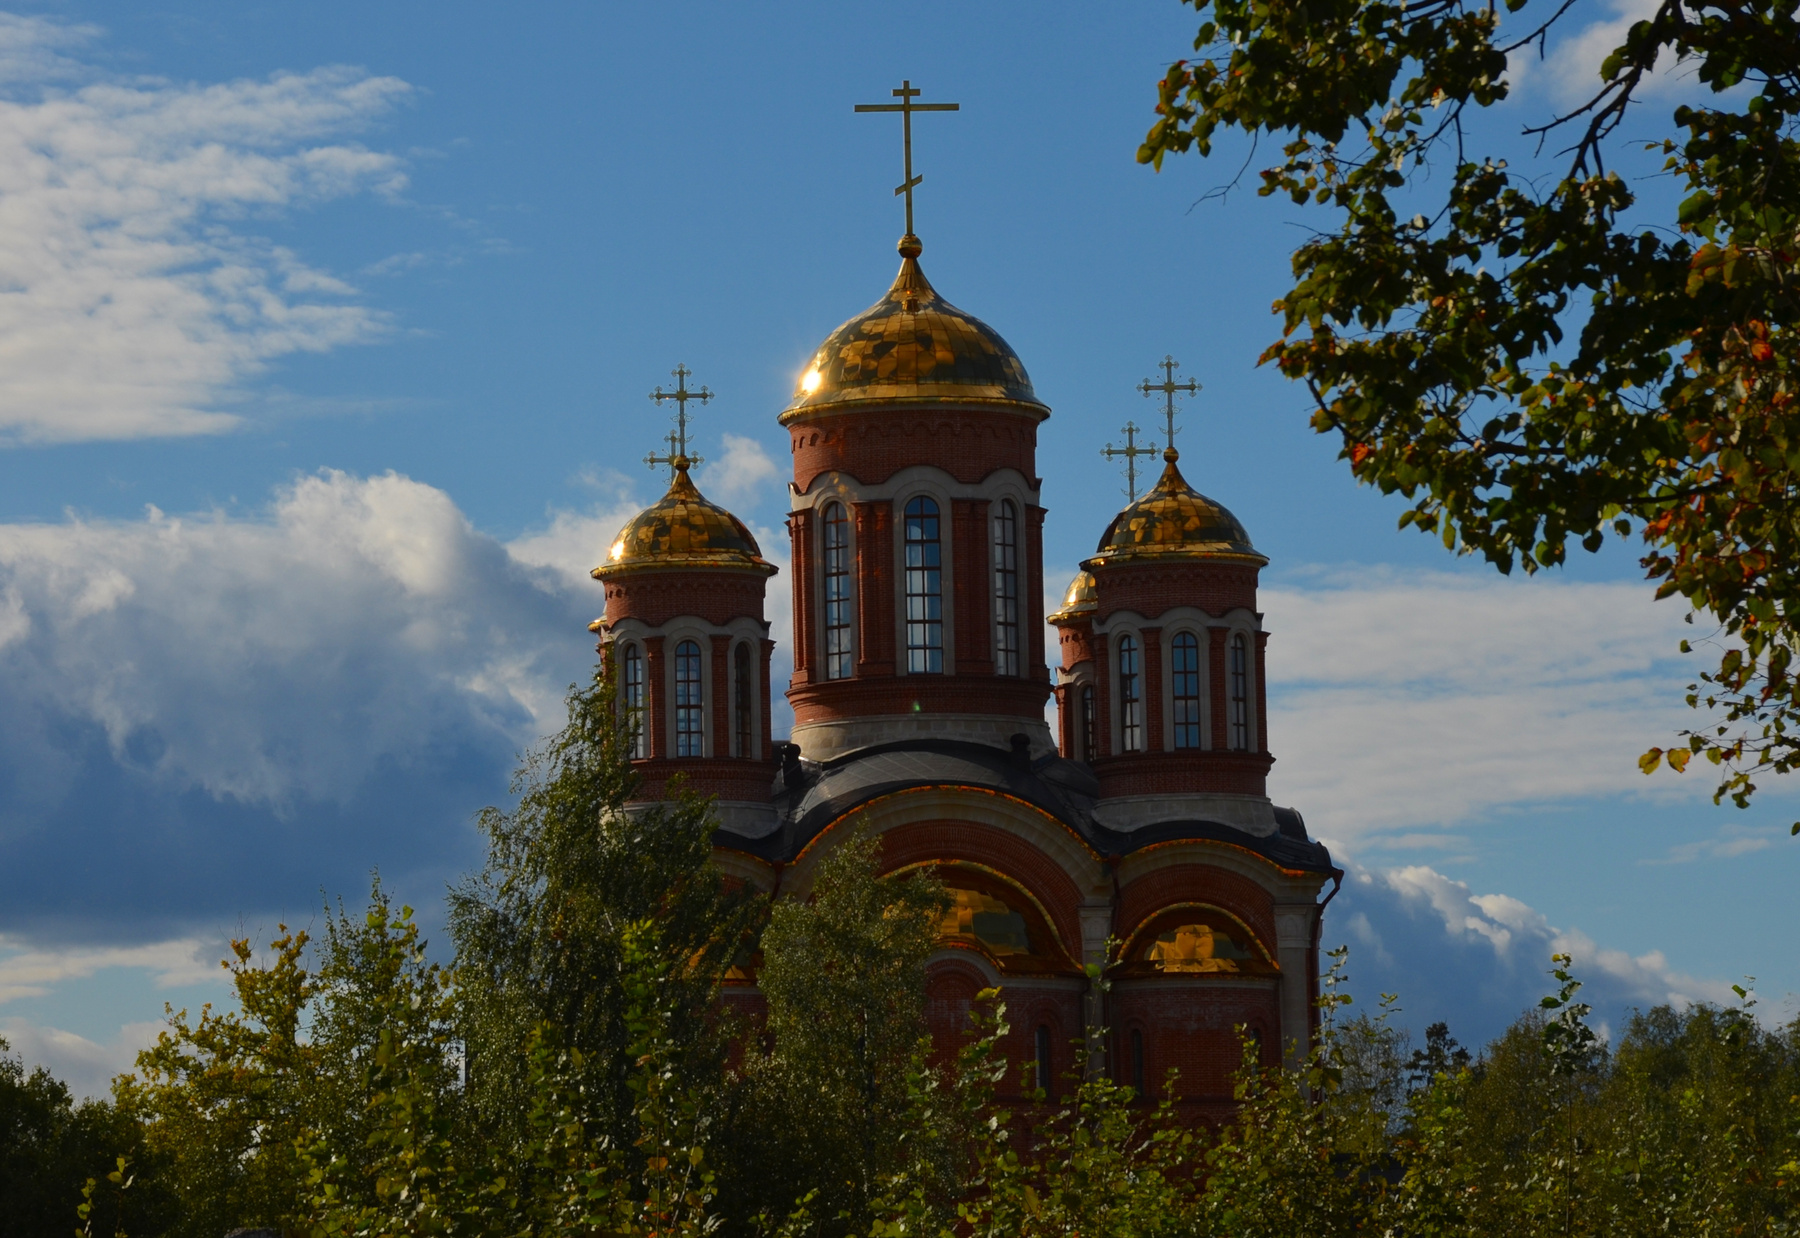 Собор в Селятино. Подмосковье Селятино храм собор небо облака сентябрь